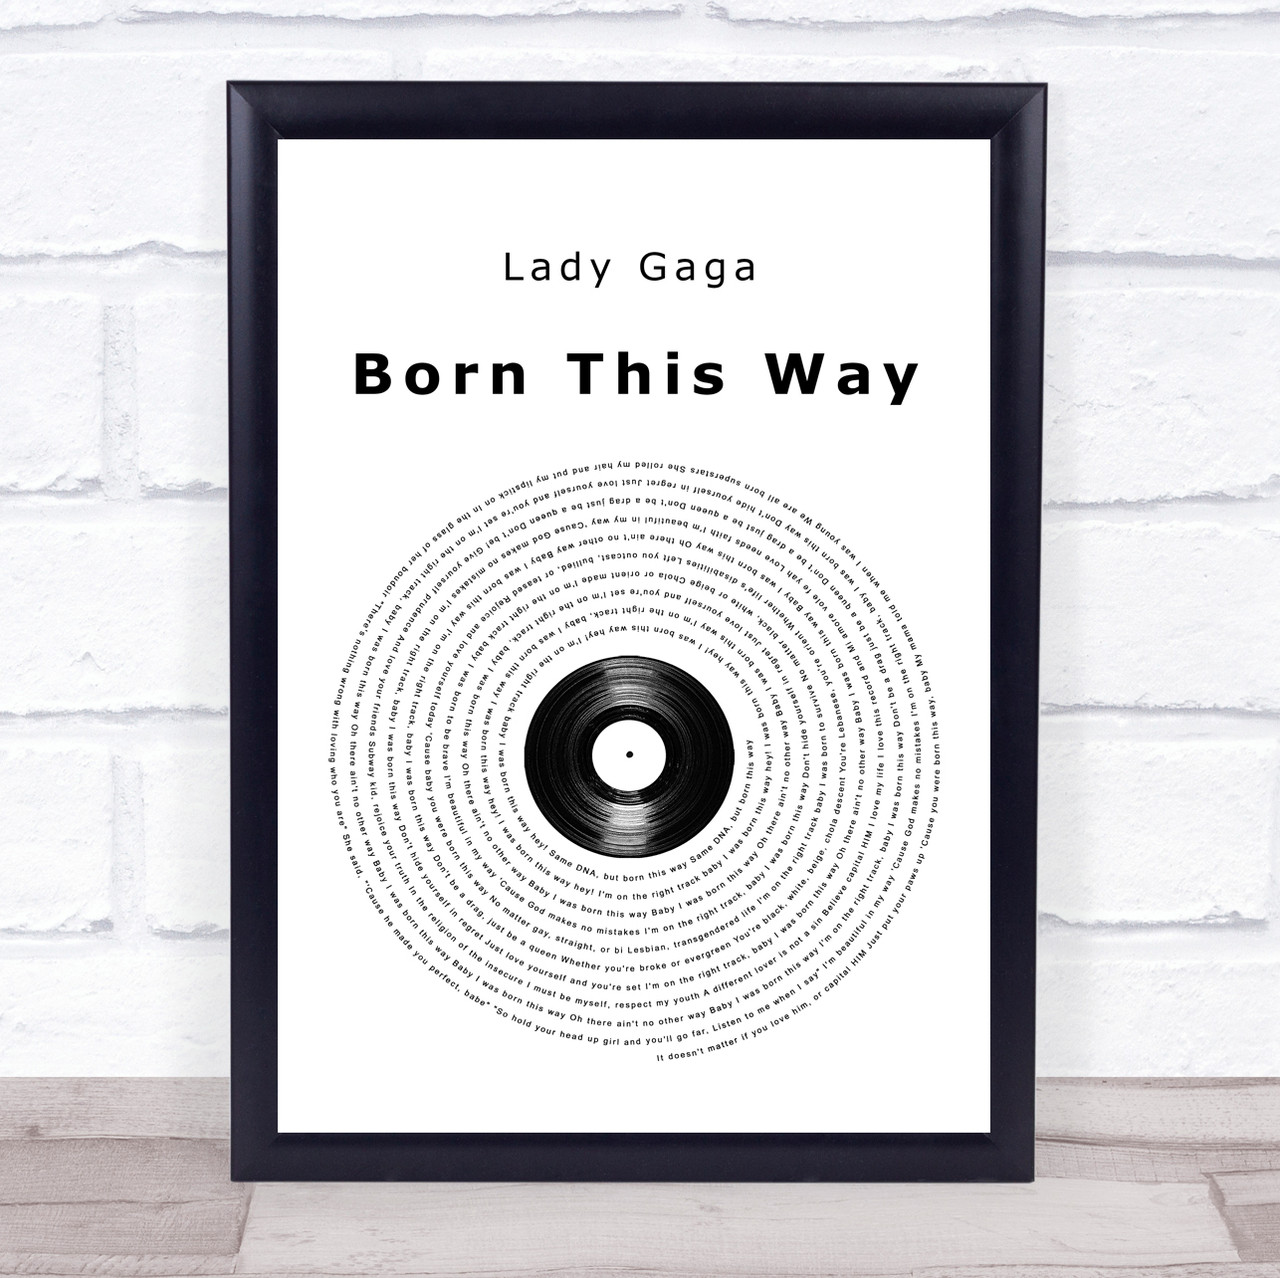 Lady Gaga Born This Way Vinilo Nuevo 2 Lp